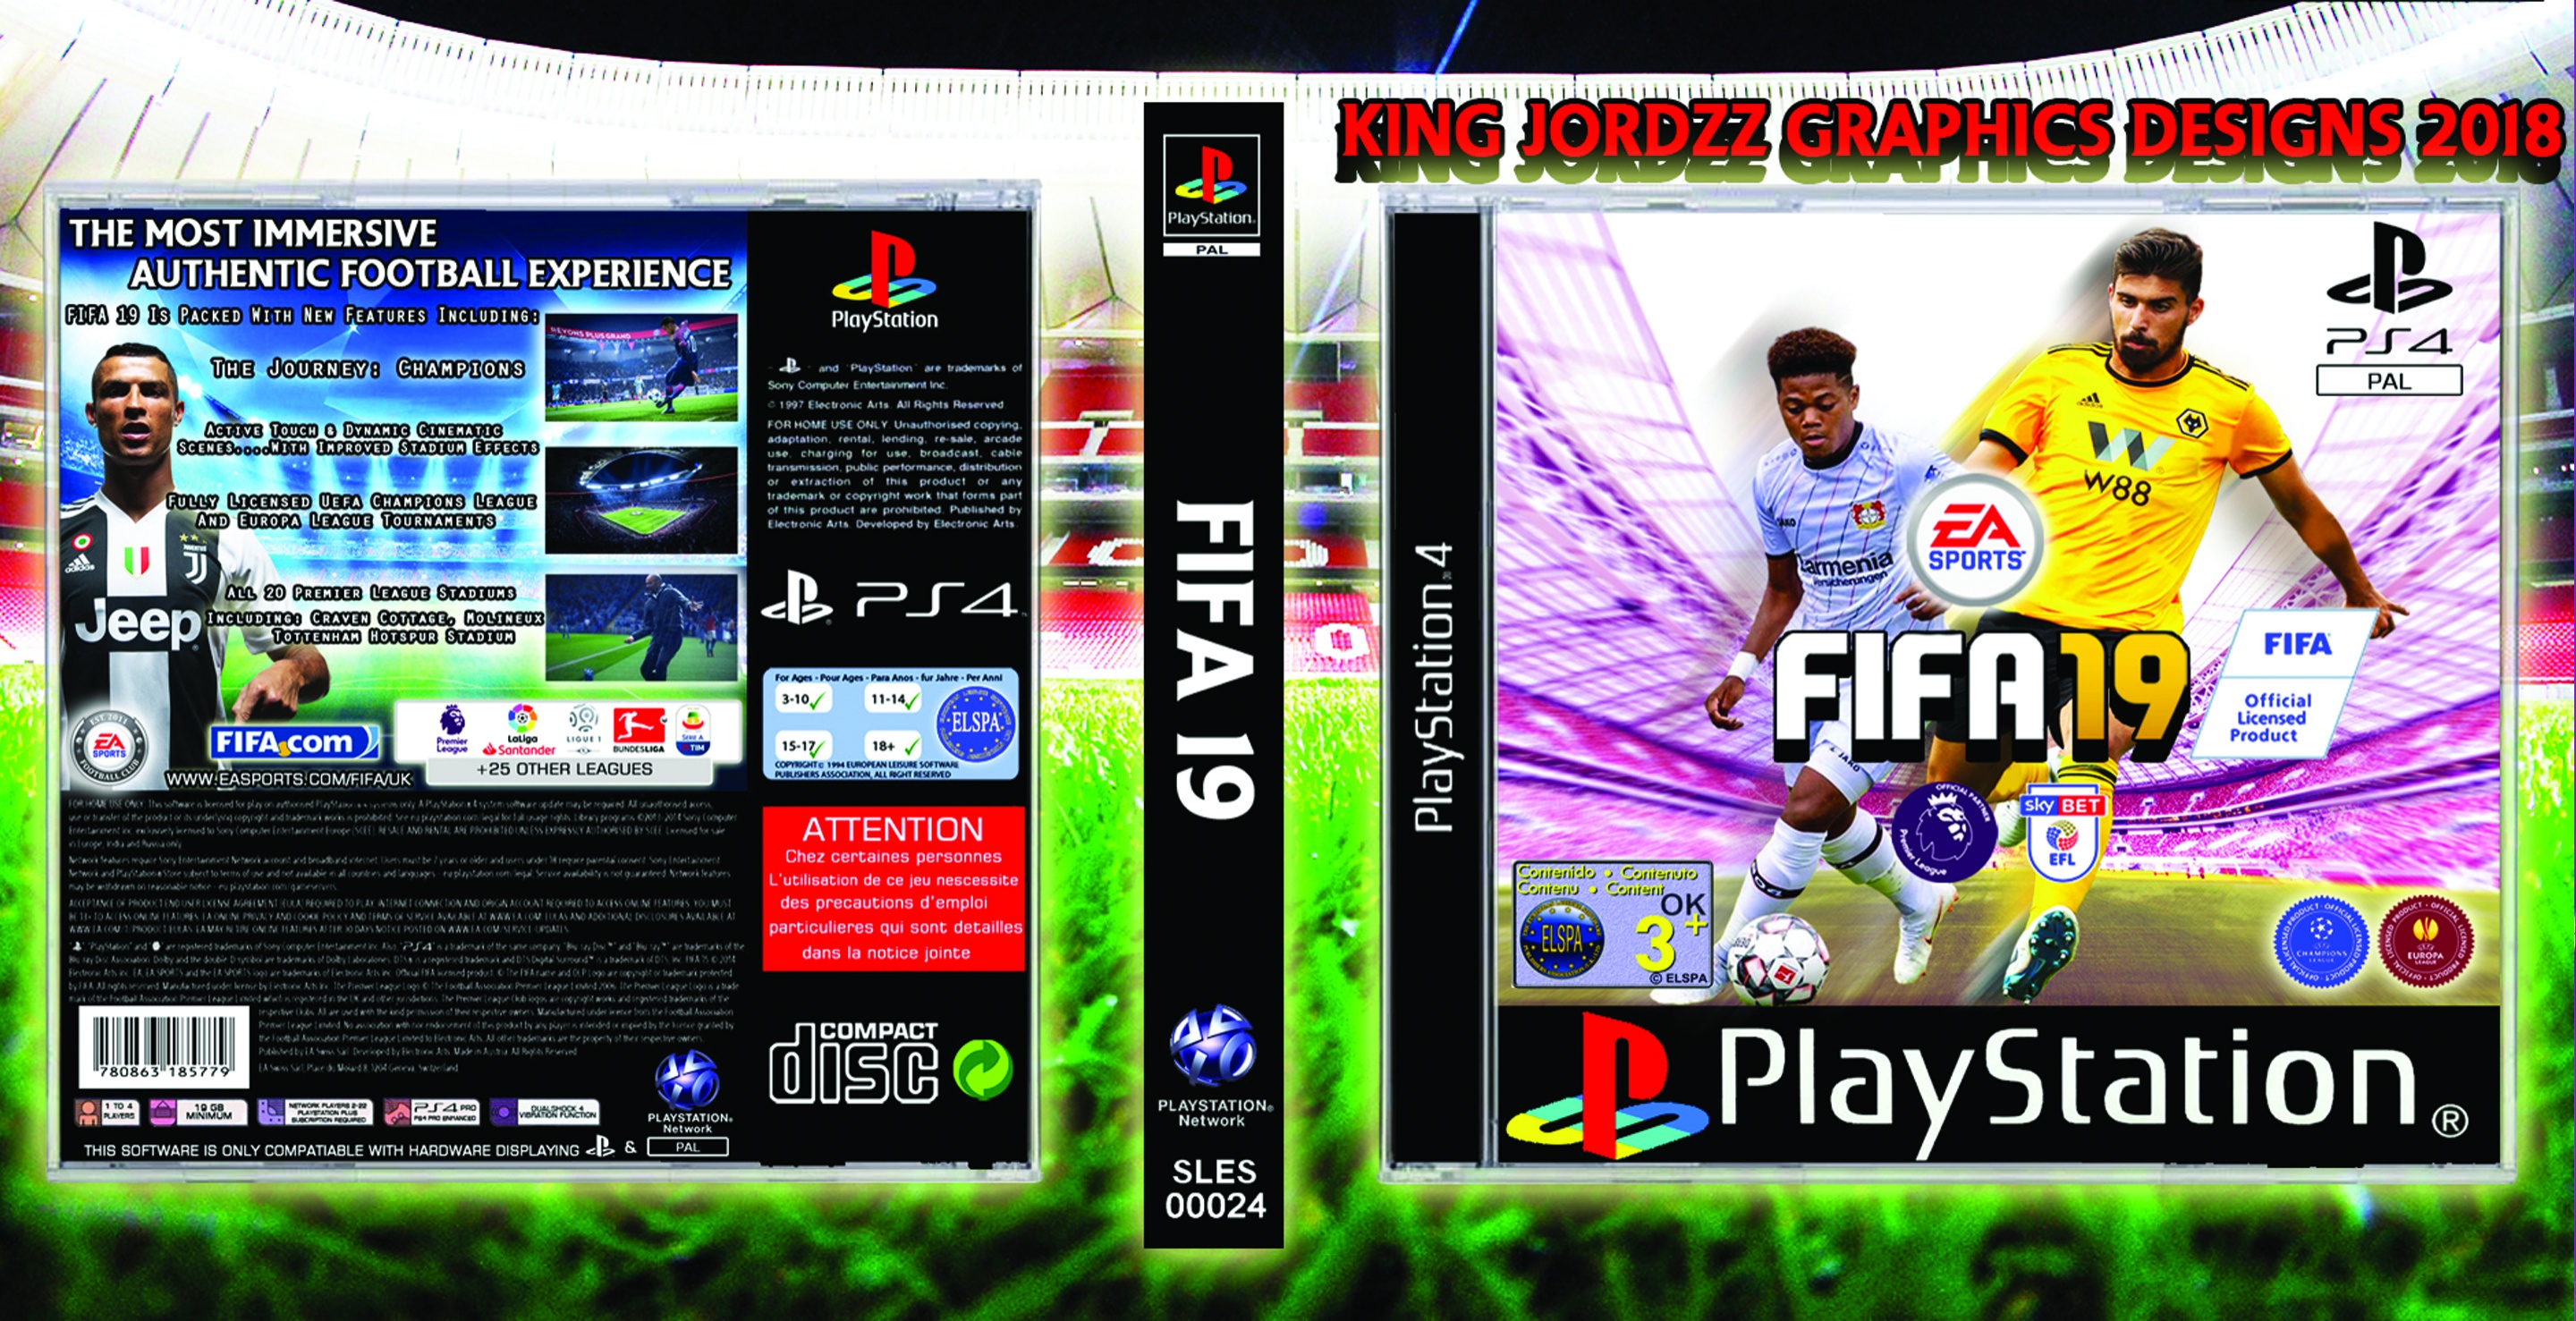 FIFA 19 box cover